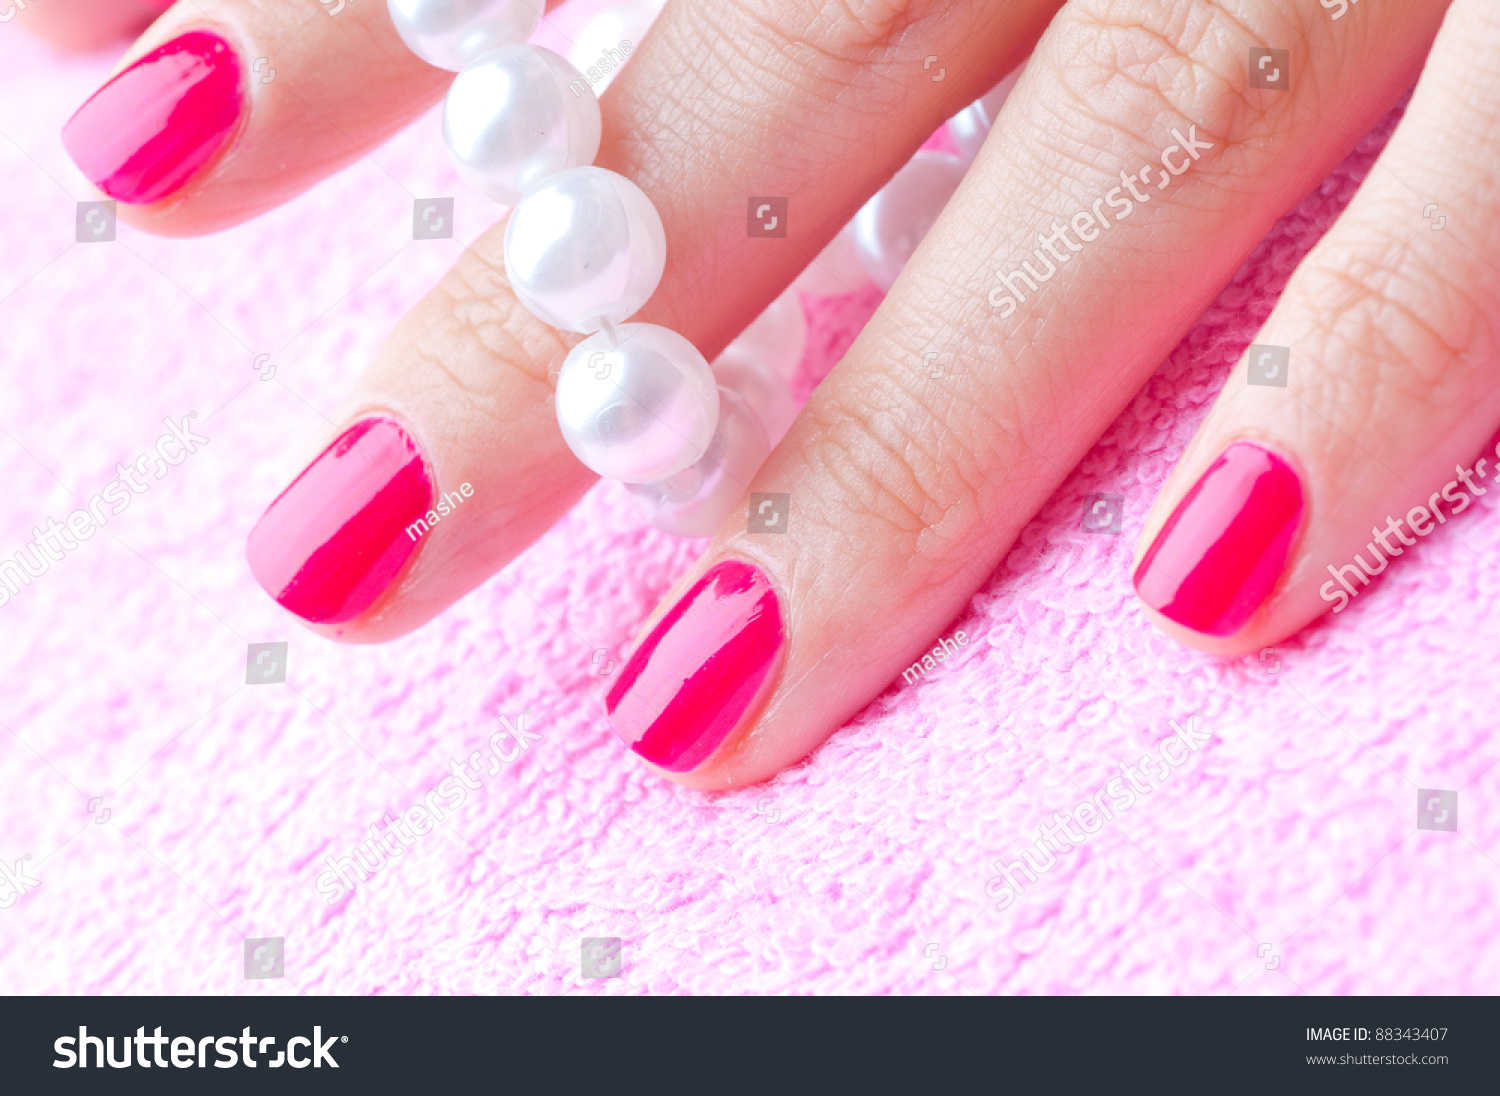 Ногти накрасить белый и розовый короткие